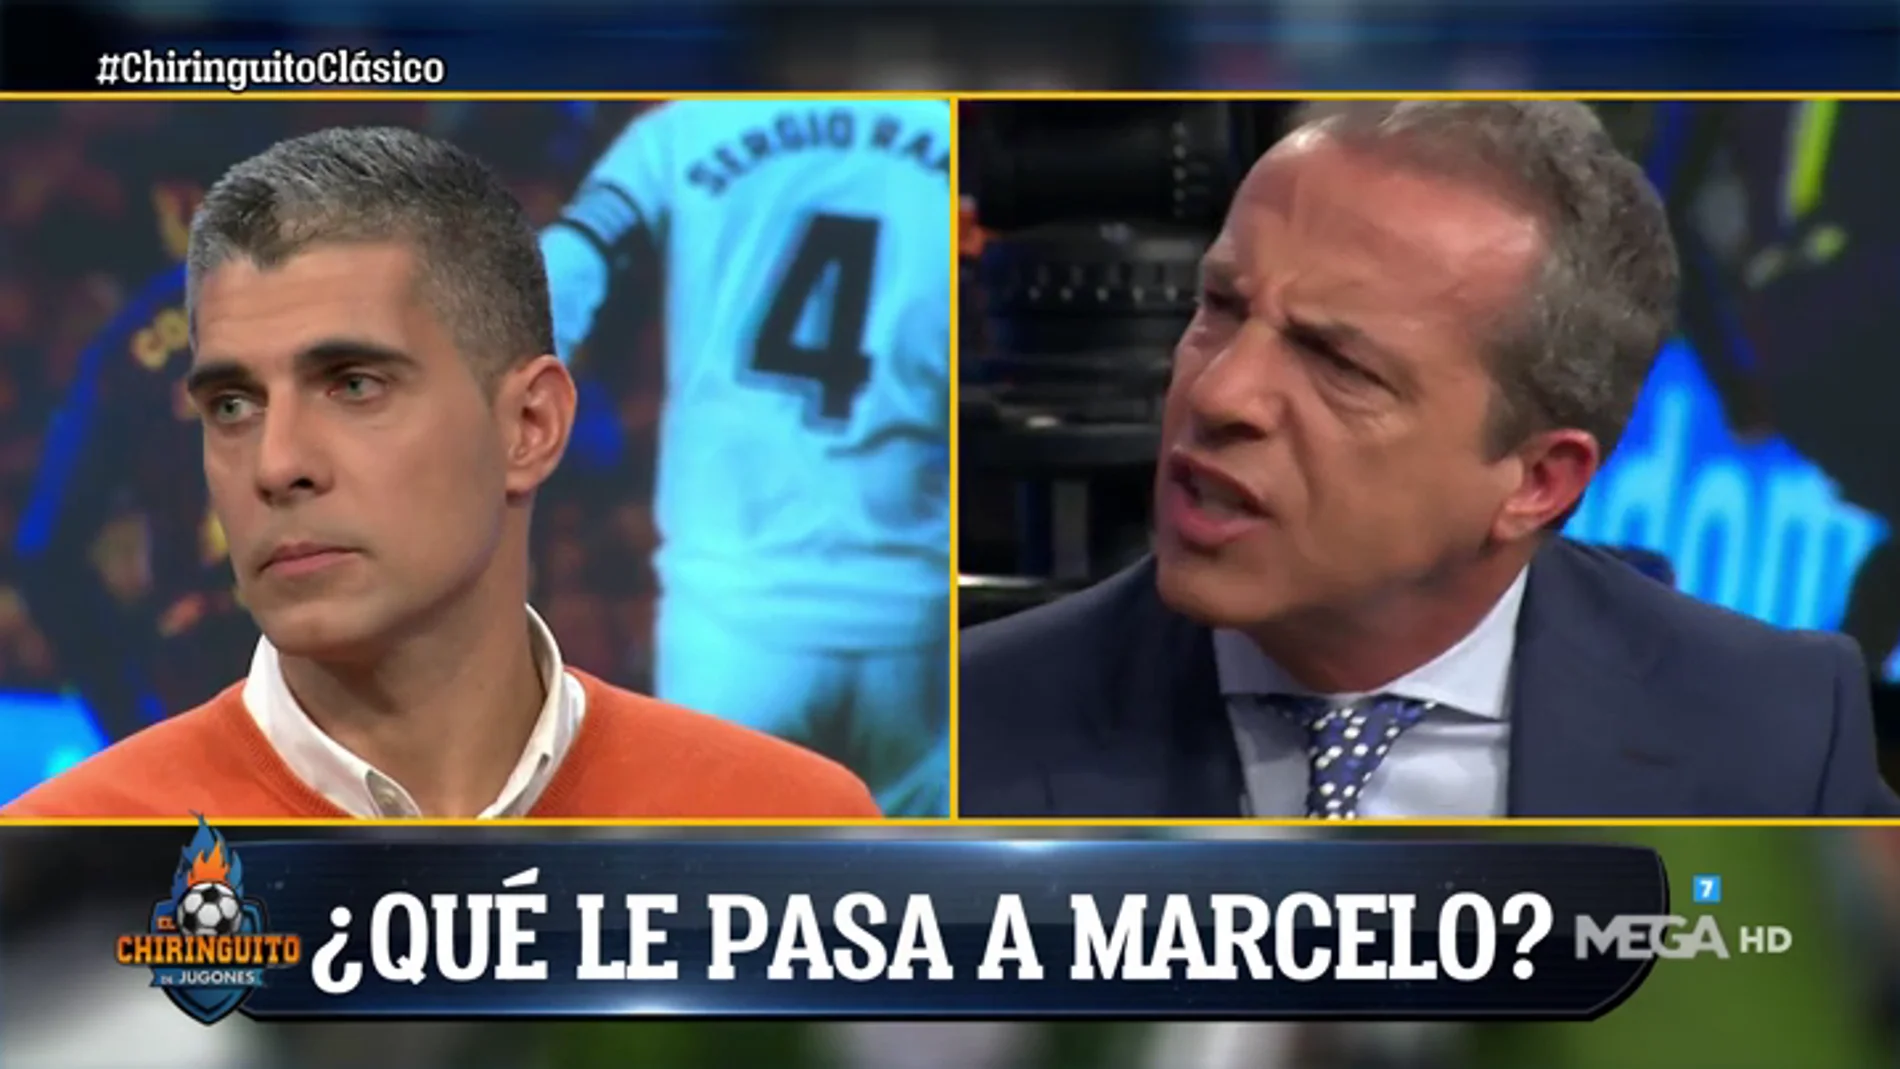 Cristóbal Soria: "Que le diga las cosas a Marcelo en el vestuario, no en una sala de prensa"